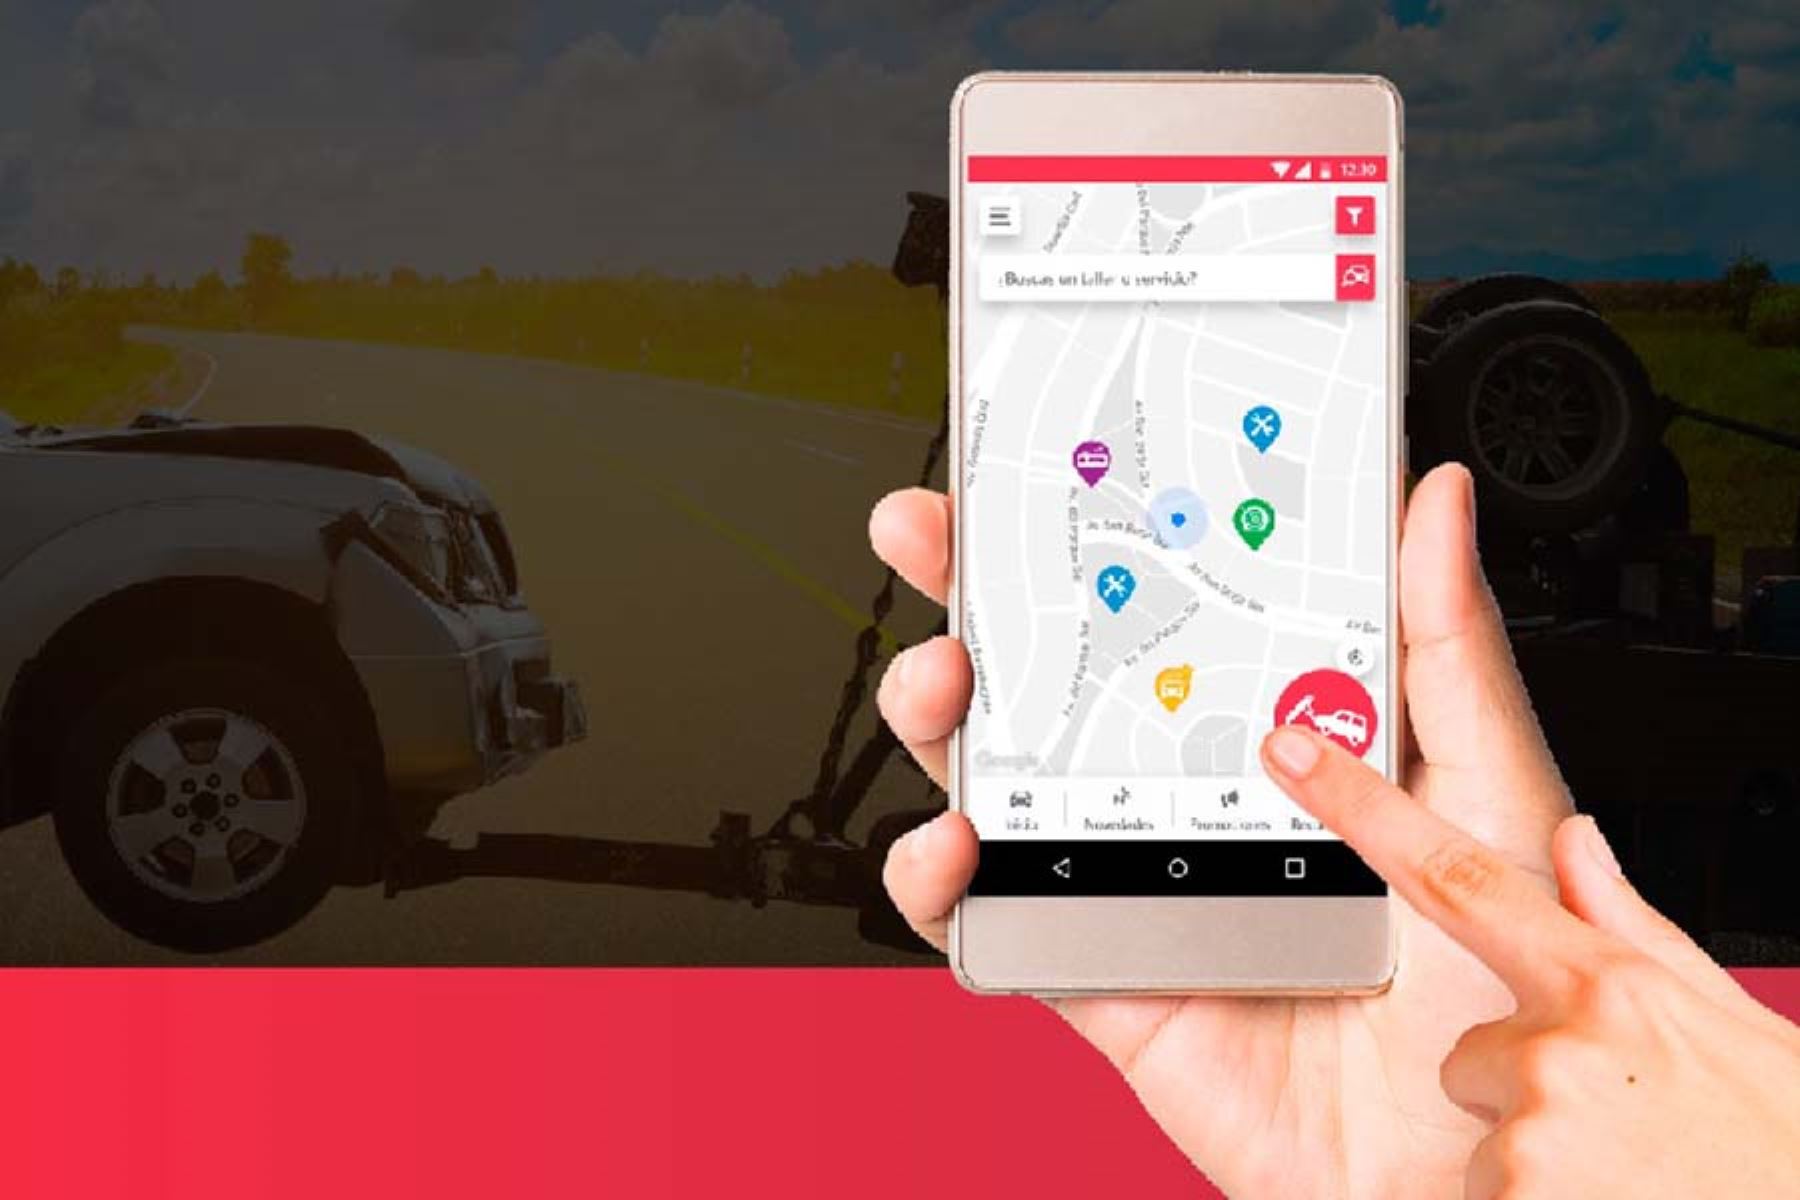 CarHelp Perú ubica a los talleres automotrices más cercanos a través del GPS del smartphone.